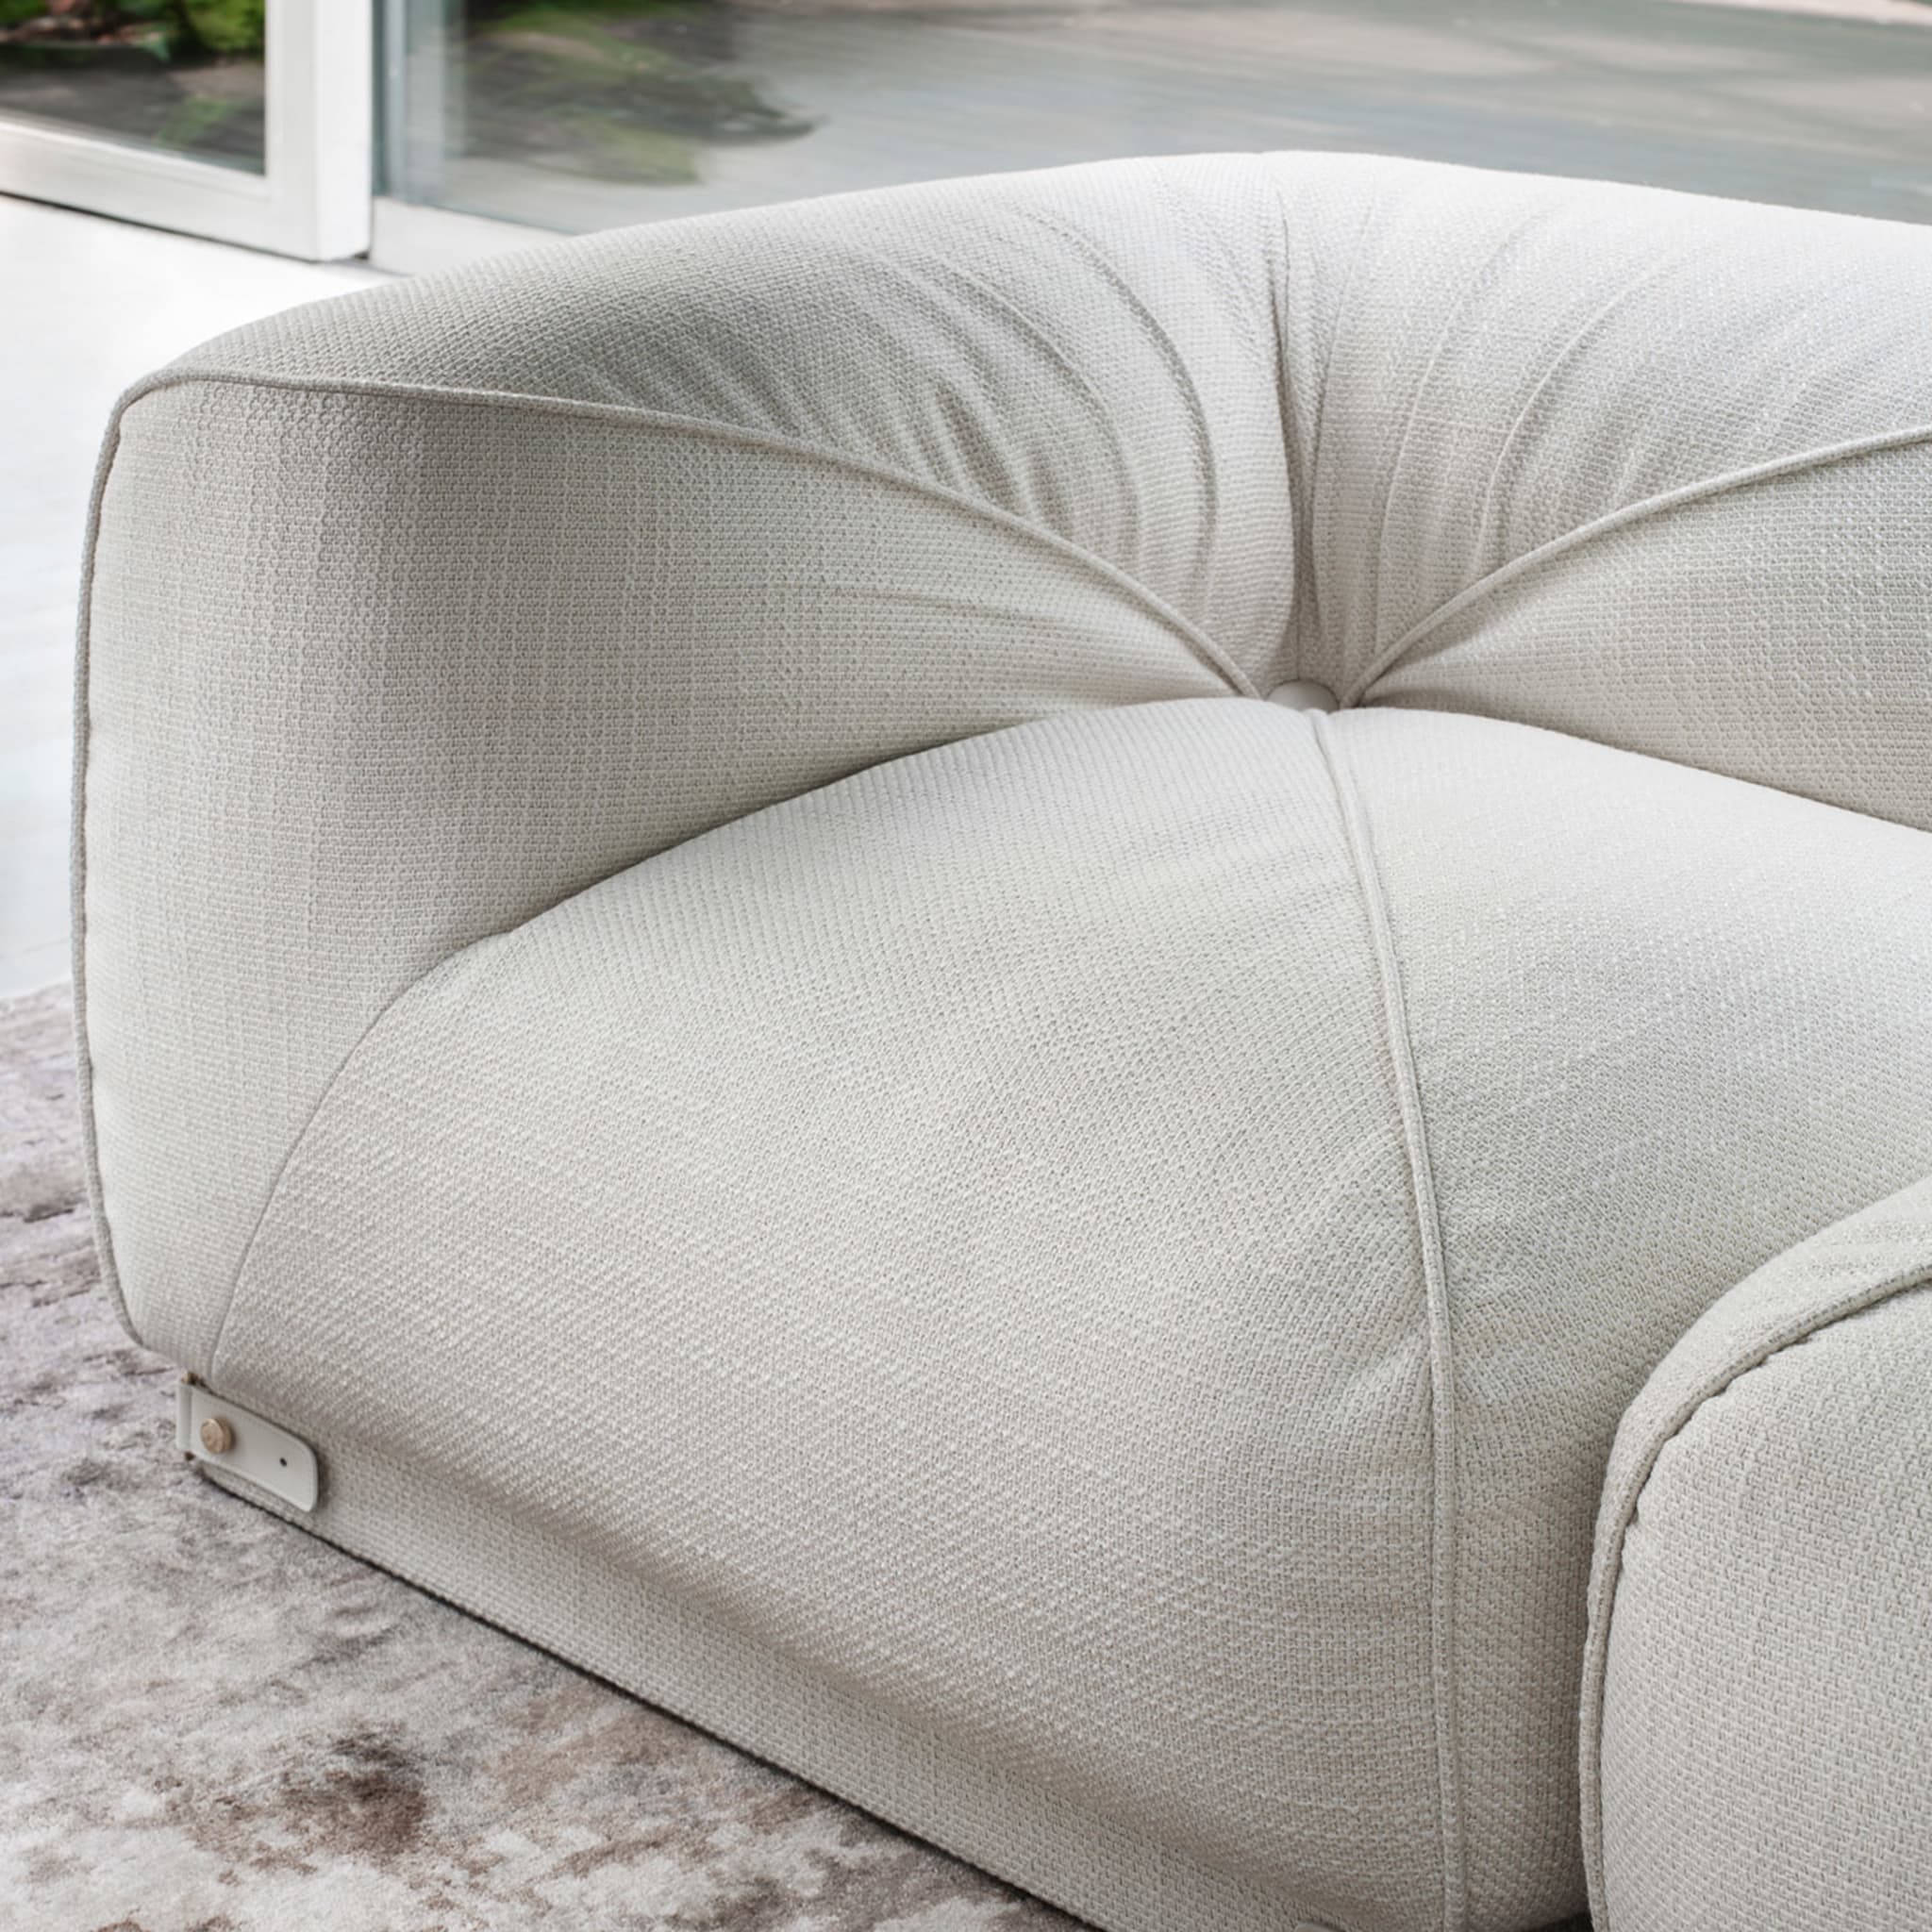 Leisure 4-Seater White Sofa by Lorenza Bozzoli - Alternative view 4